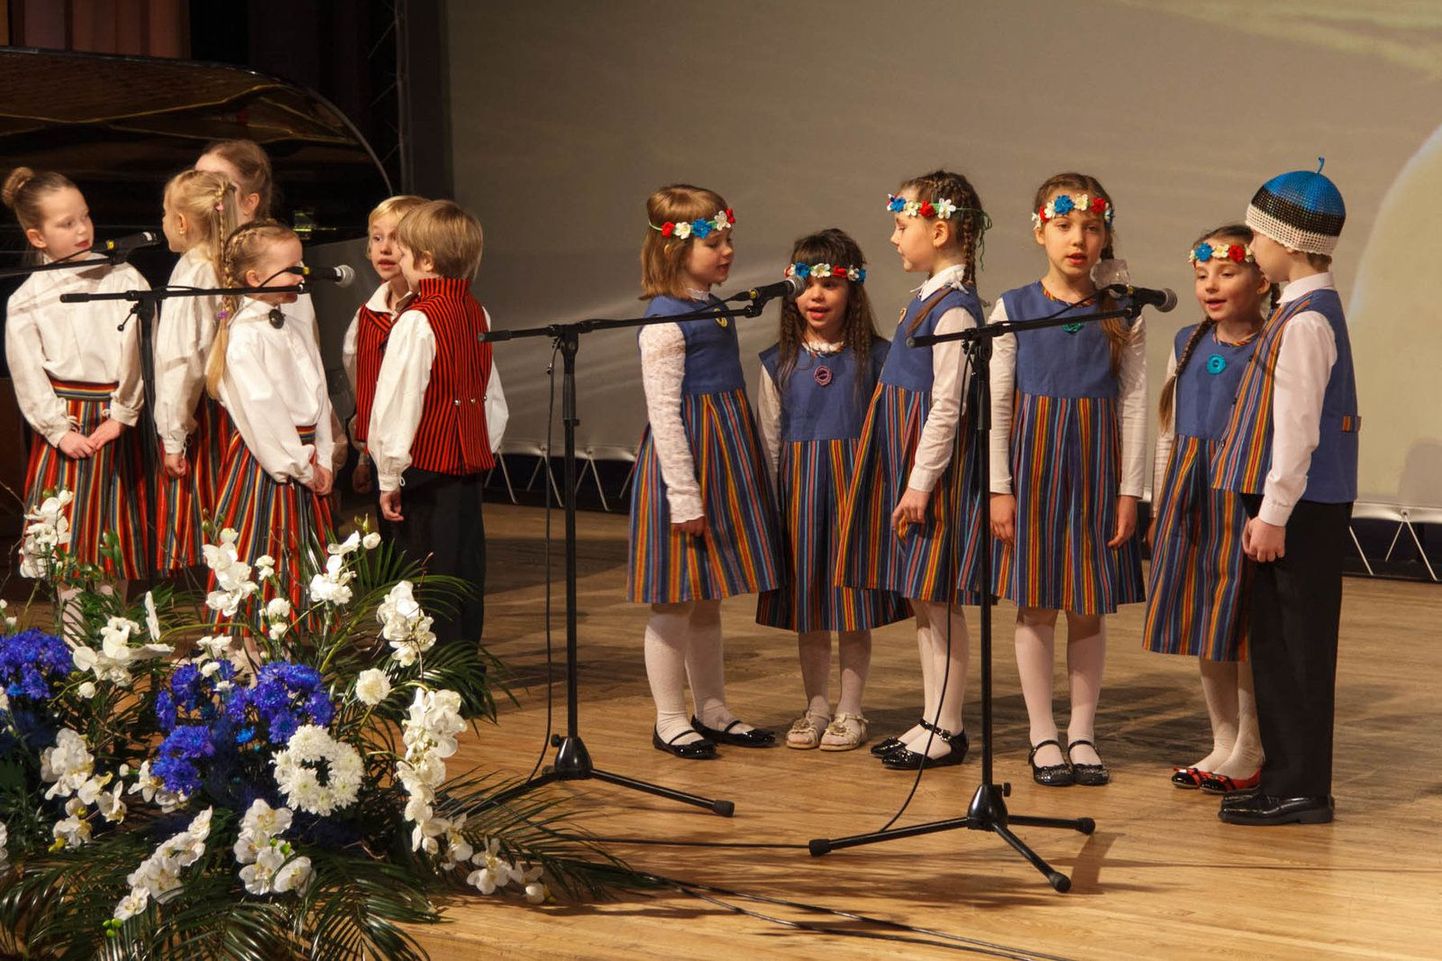 Vabariigi aastapäevale pühendatud kontsertaktusele Valgas olid sel aastal kaasatud ka linna mudilased. Koos Jassi Zahharoviga laulsid Buratino ja Walko lasteaia lapsed hümni, millega pidulik aktus avati. Hiljem esitasid mudilased tuntud lastelaulu «Mu koduke».